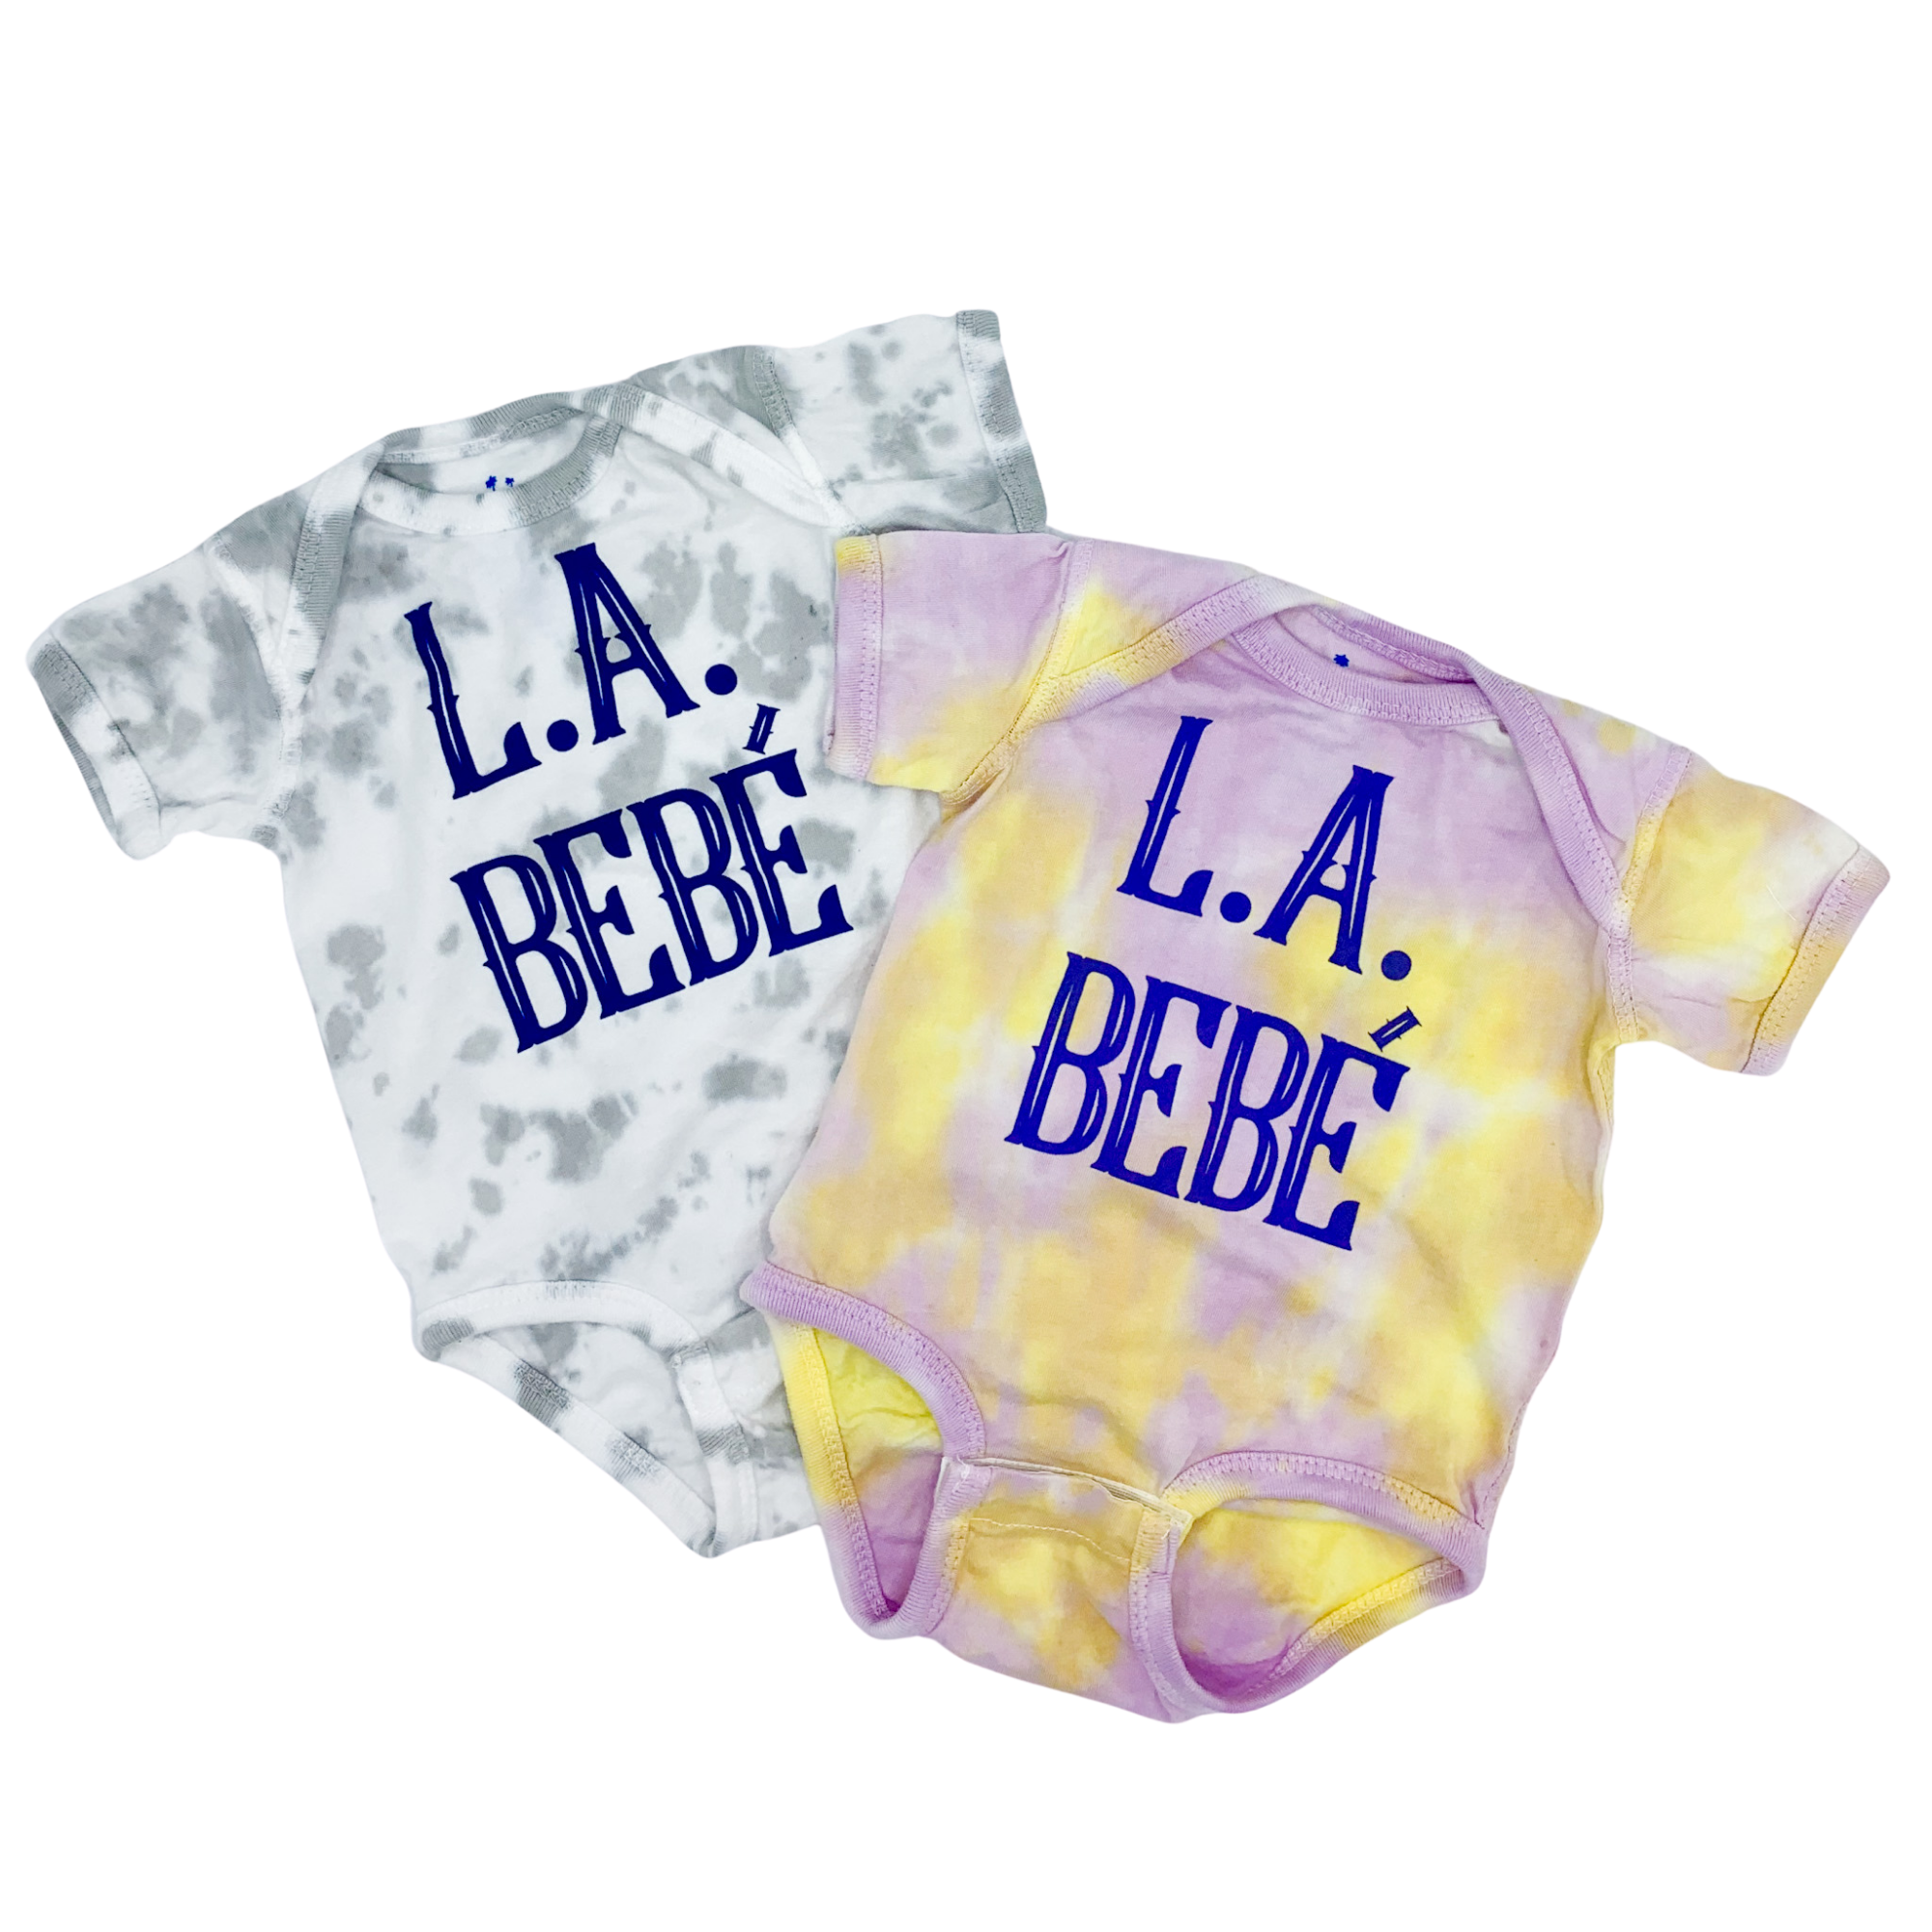  L.A. BEBÉ tie dye onesie 